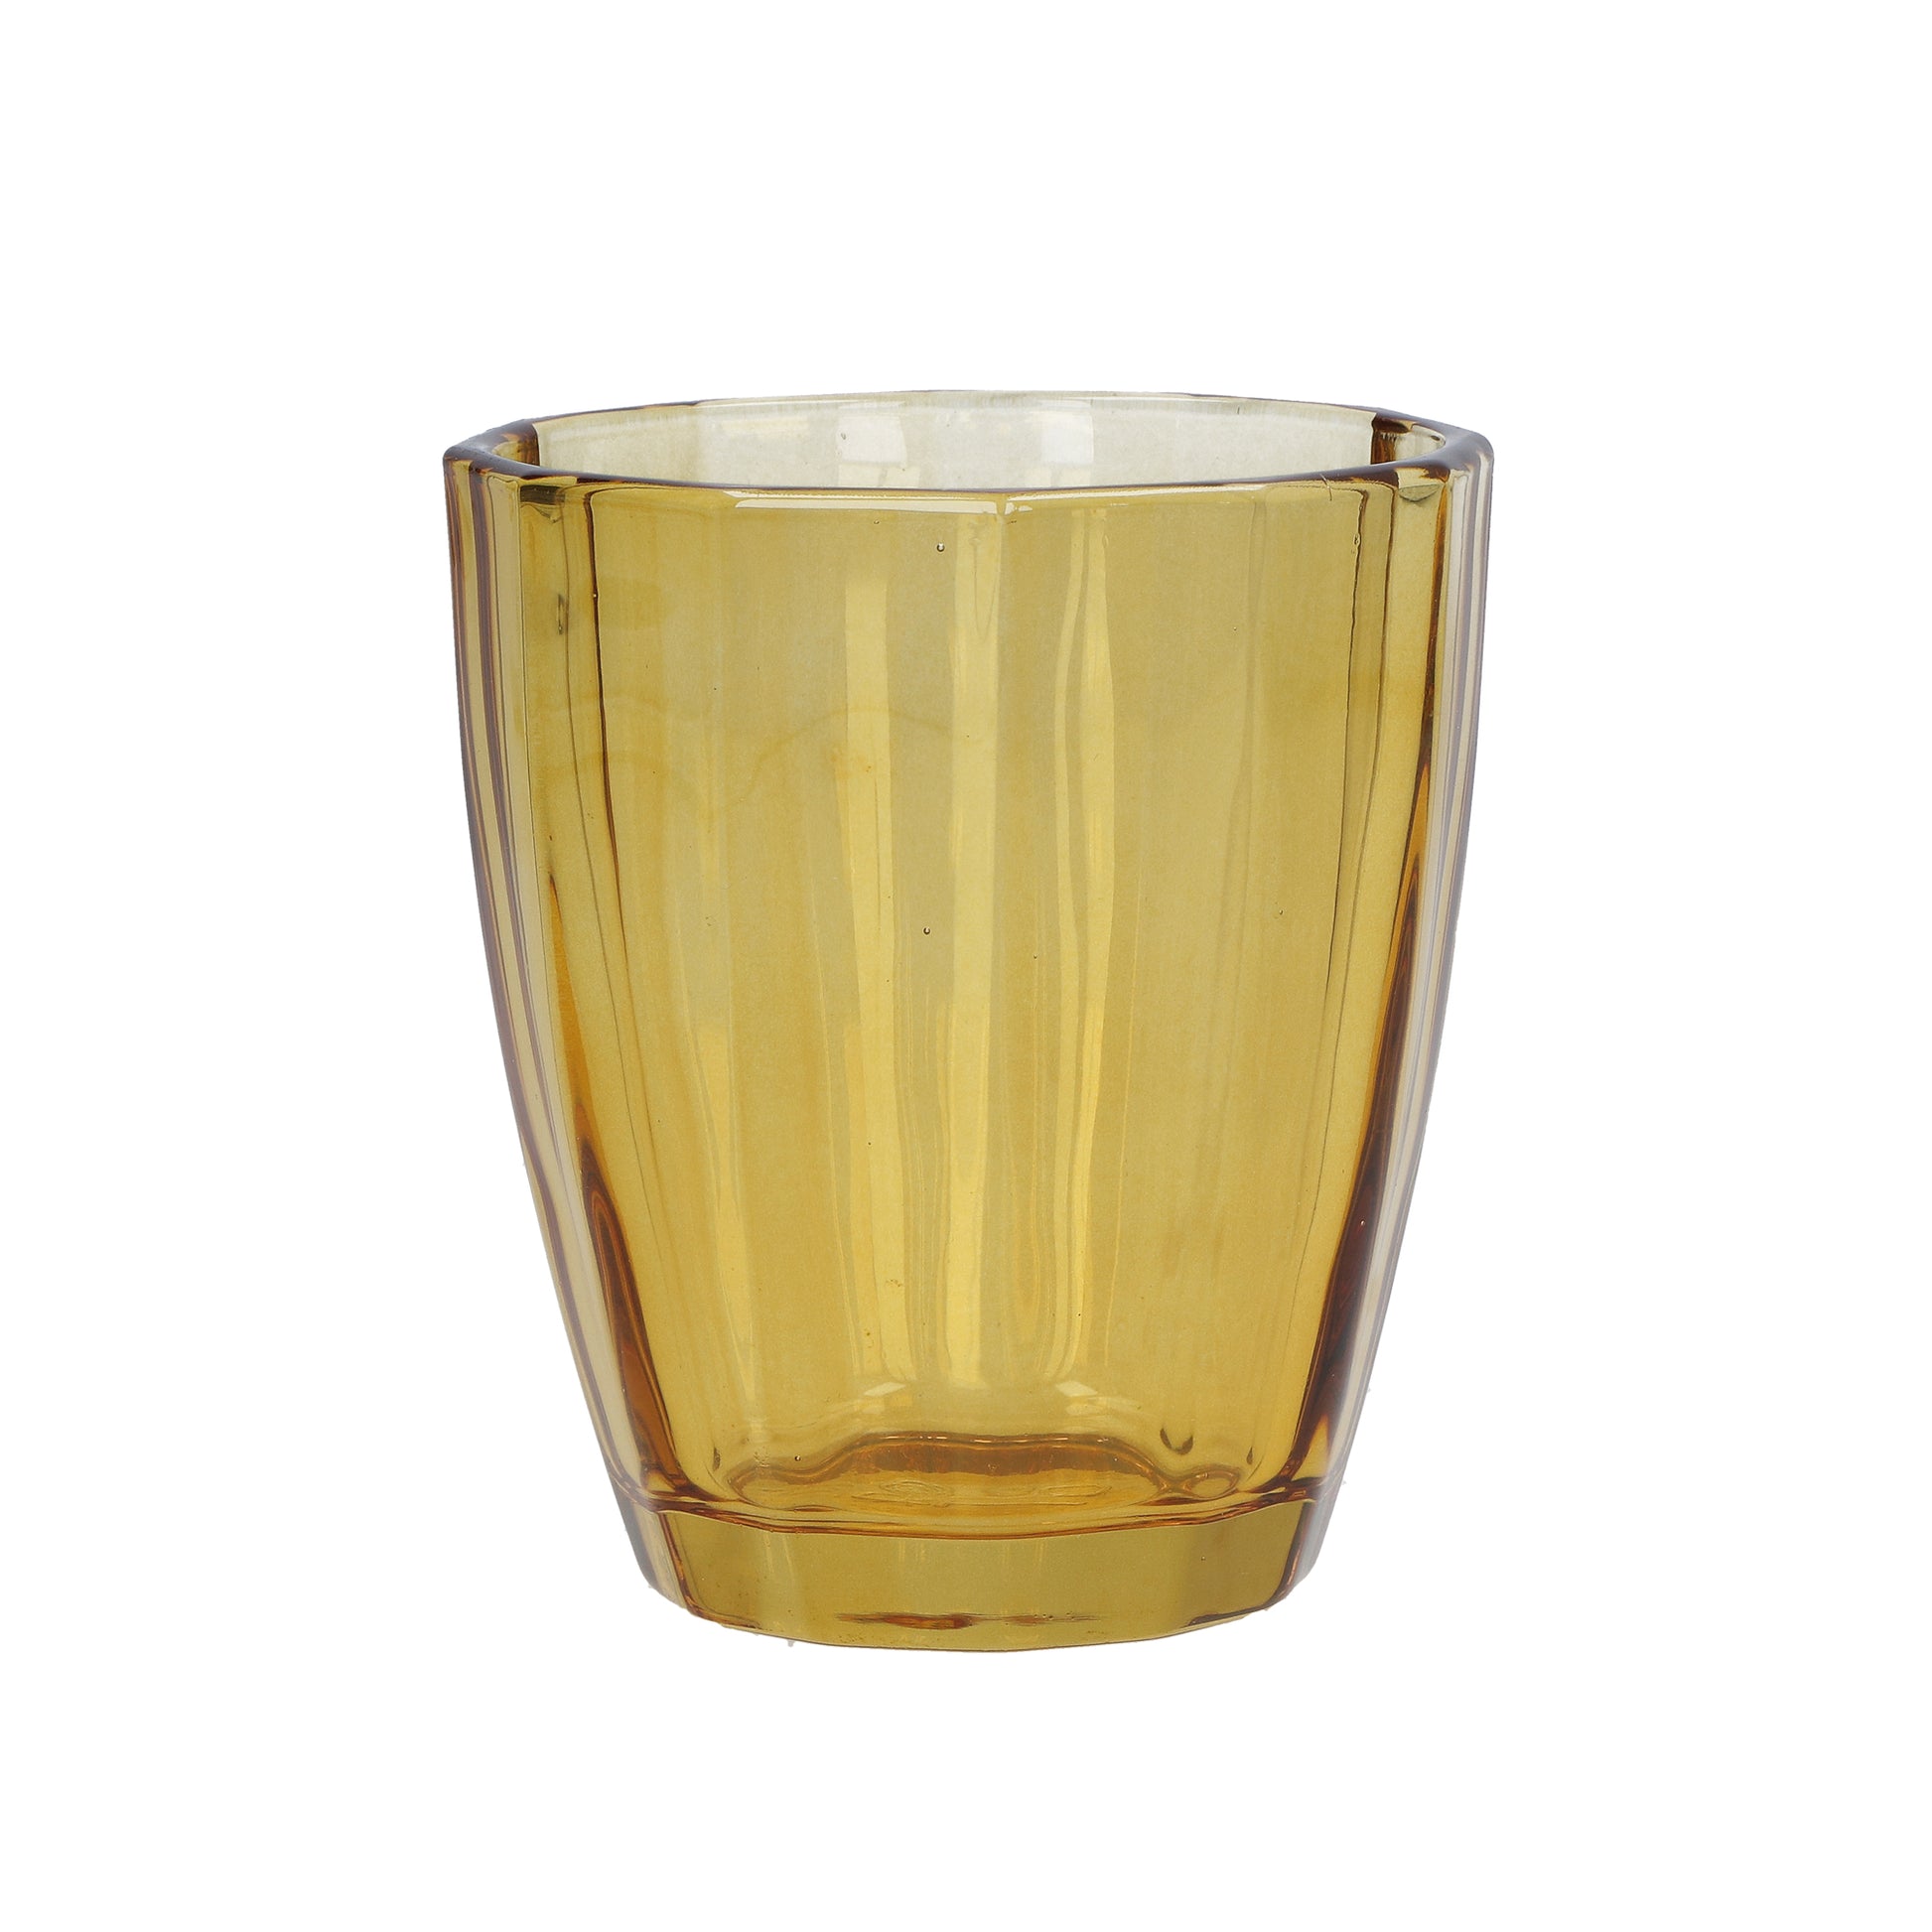 Confezione 6 bicchieri in vetro ambra cc 320 - Ø 8,5 - h 10 cm. Lavabili in lavastoviglie. In negozio e online su tuttochic.it